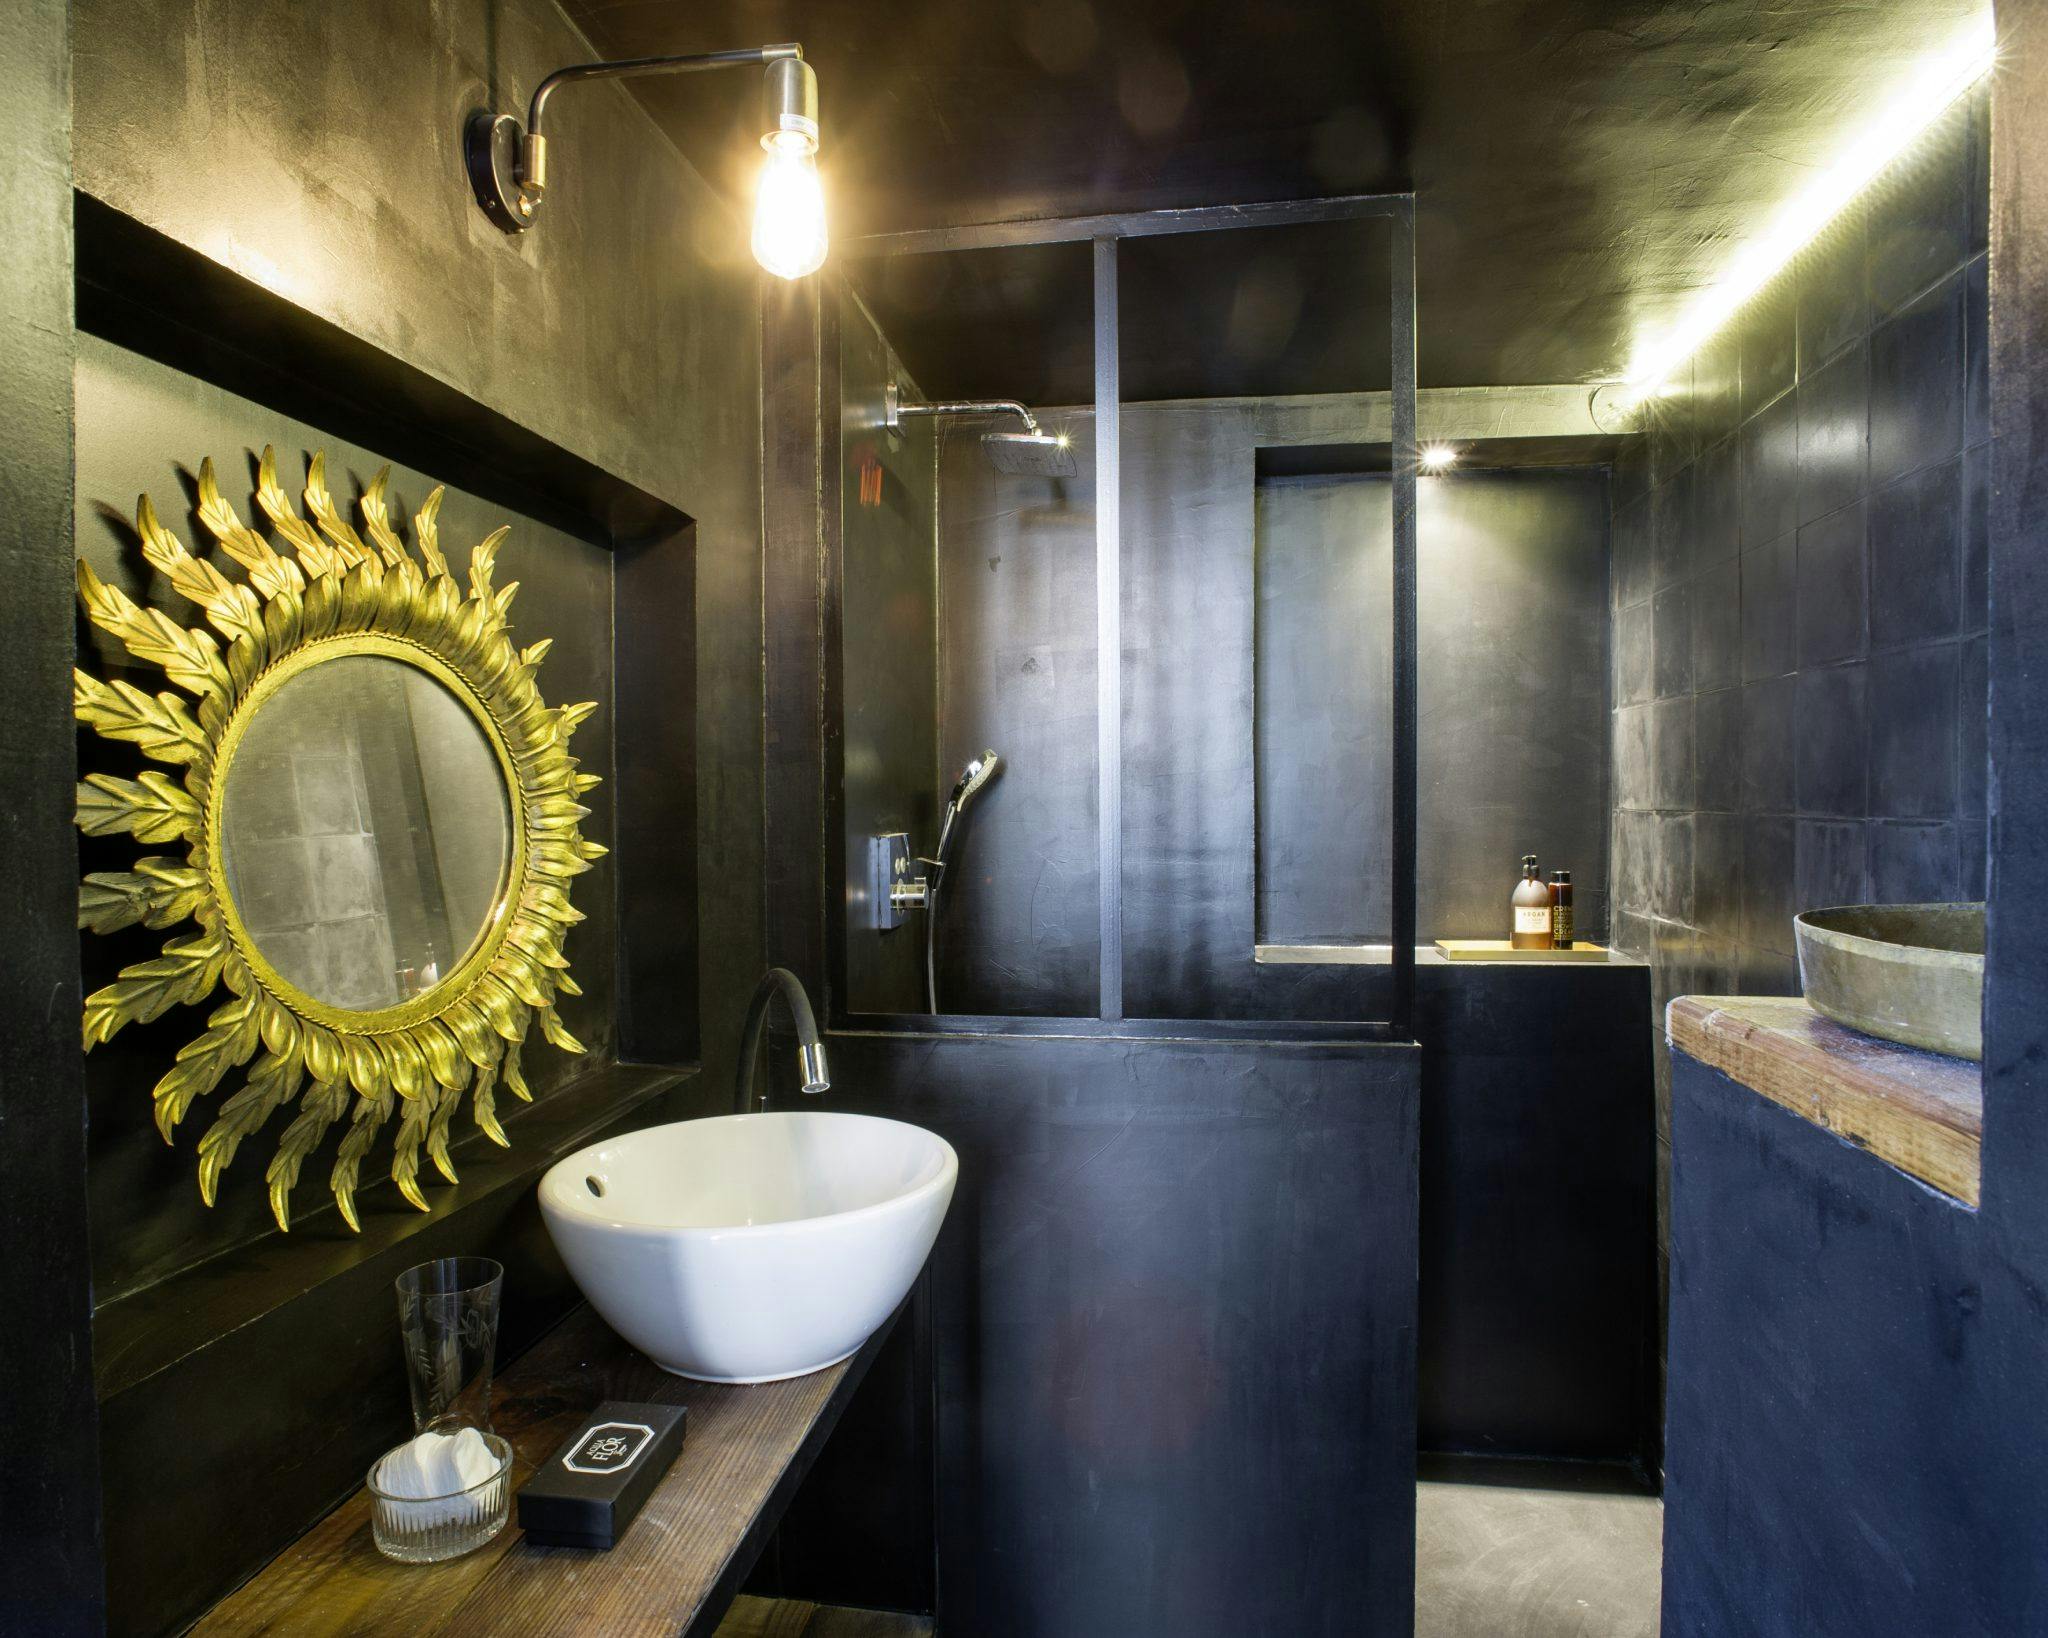 Détail de la salle de bain aux murs noirs, baie vitrée et miroir doré.